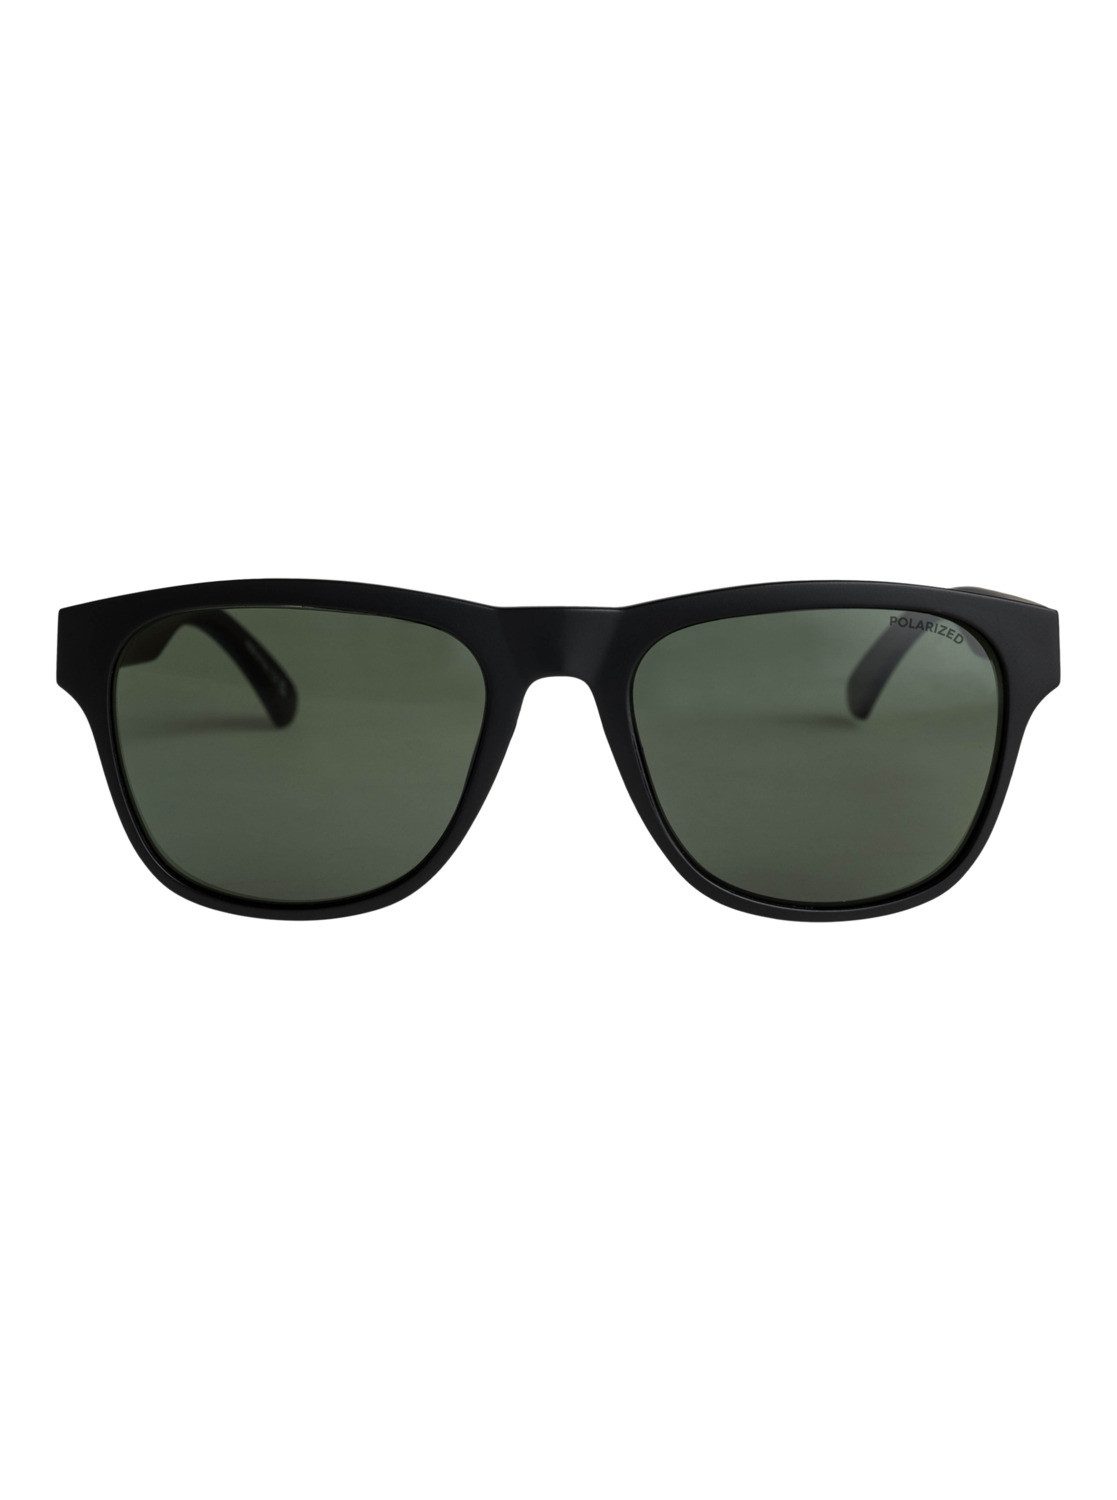 Sonnenbrille Plz Tagger Polarized Quiksilver Black/Green